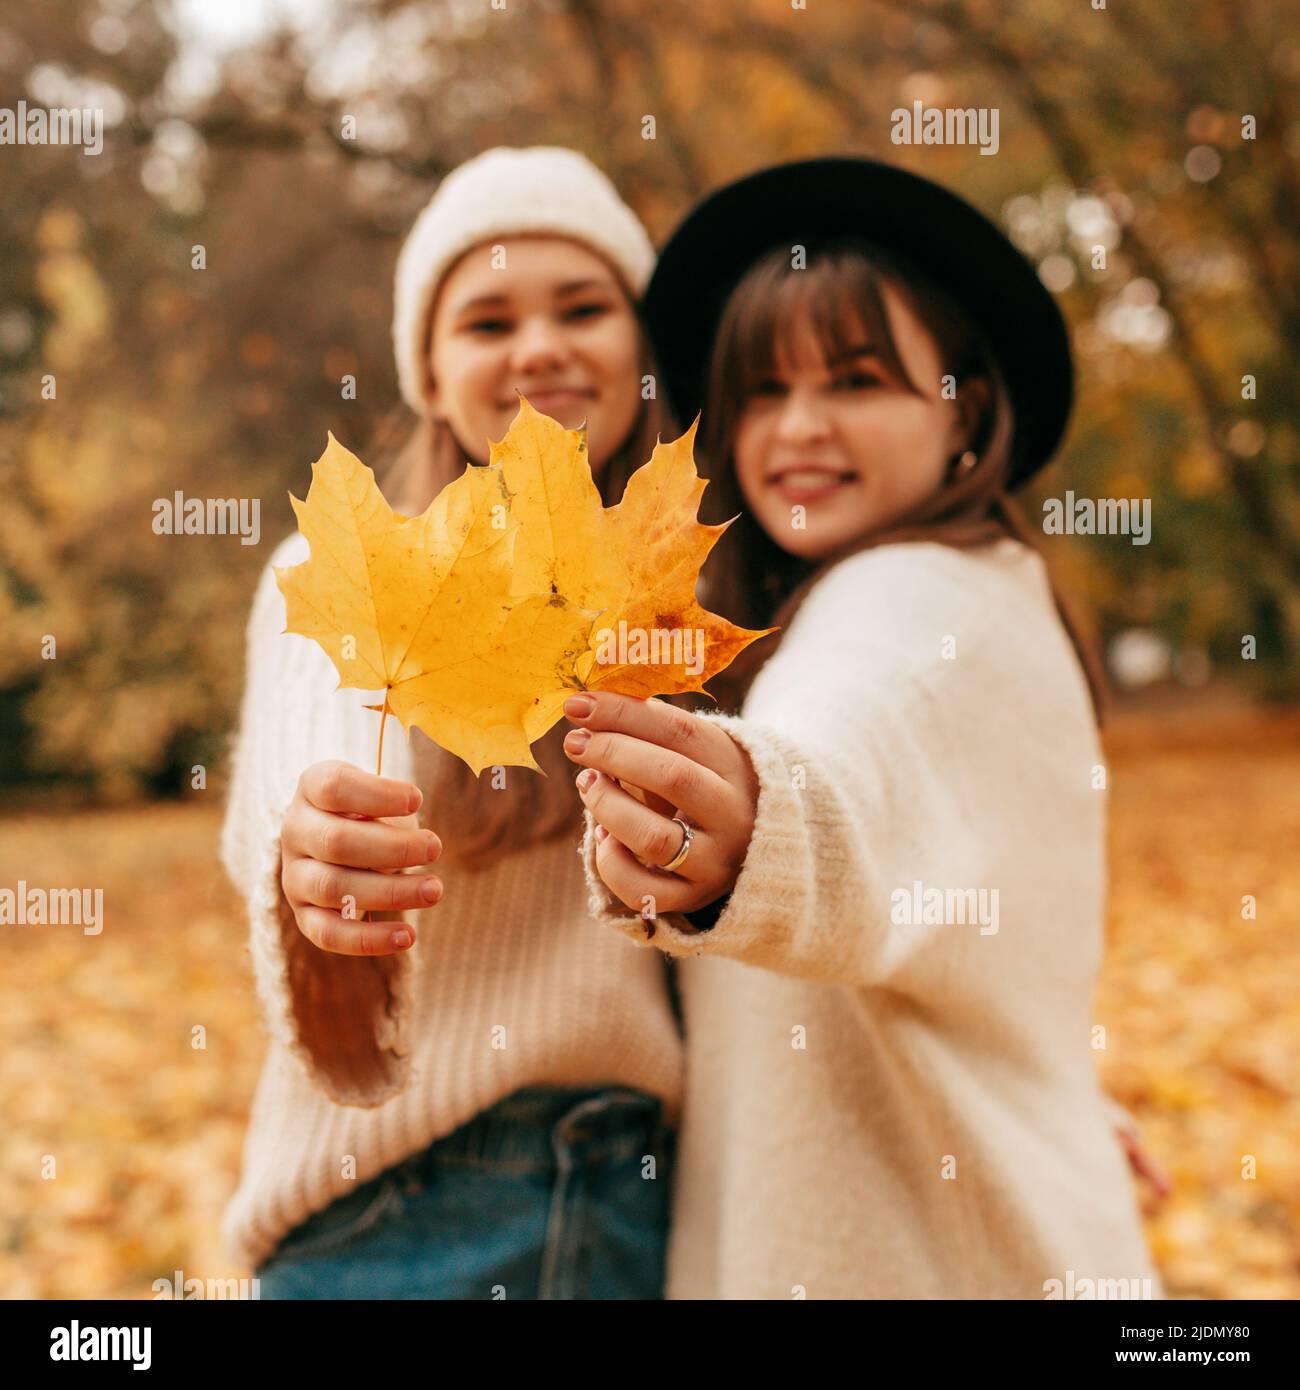 Deux jeunes femmes, non focalisées en arrière-plan, tiennent les feuilles d'érable jaune dans leurs mains et les tiennent à l'appareil photo. Automne doré. Vacances Banque D'Images